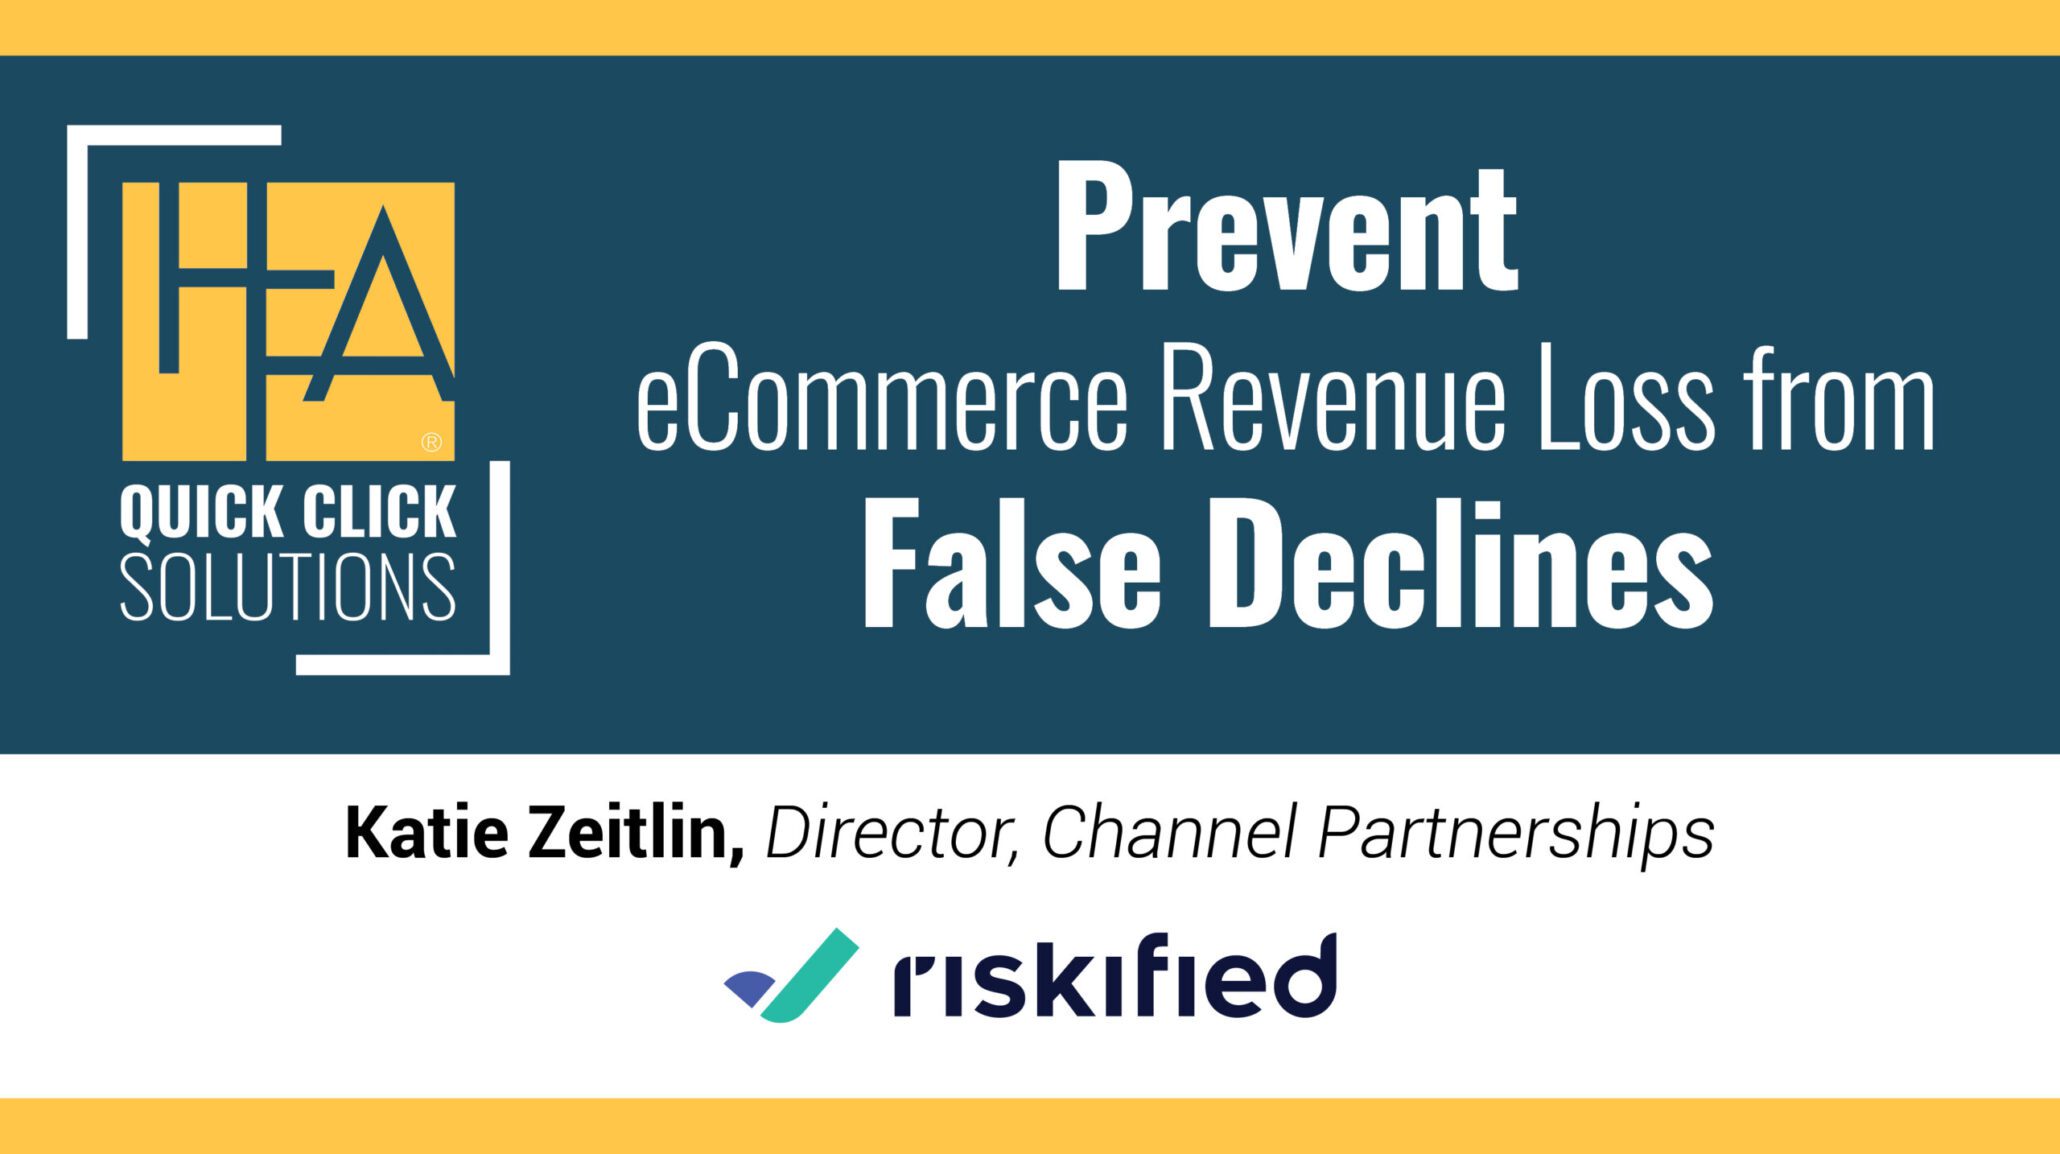 HFA-QCS-Prevent eCommerce Revenue Loss from False Declines